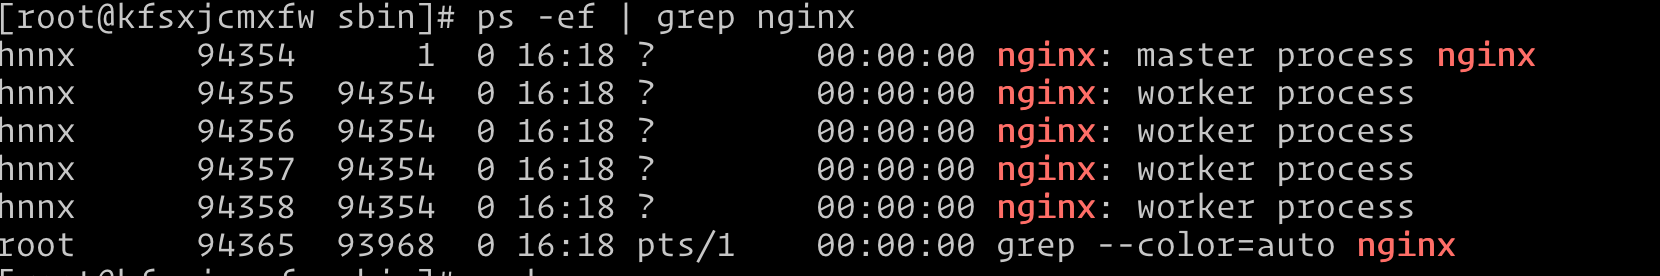 记一次使用普通用户同时启动nginx <1024端口和>1024端口权限问题